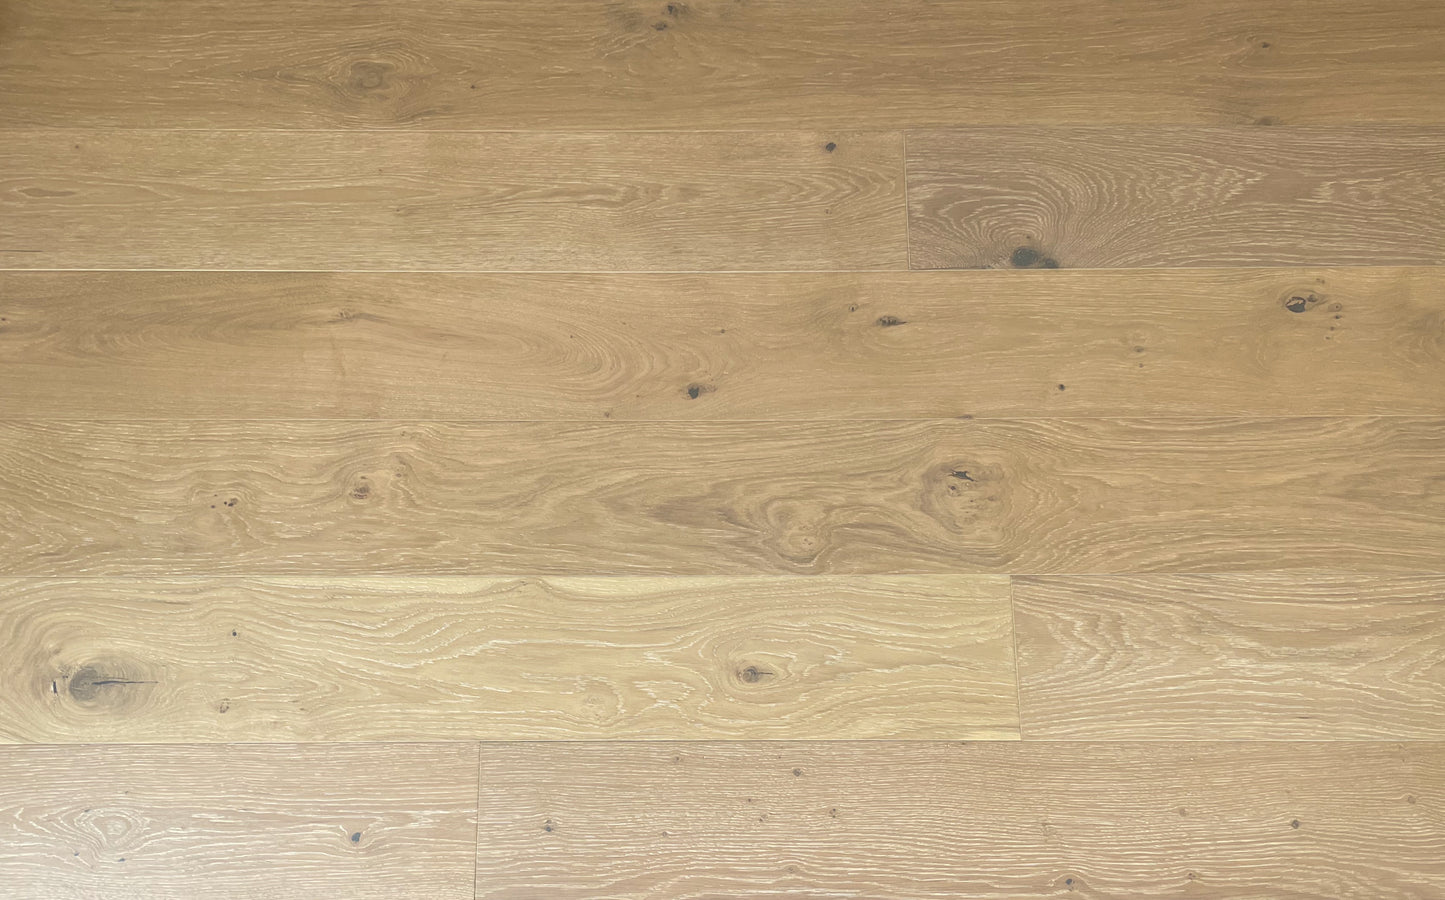 7 1/2" x 1/2" Engineered European Oak Oceanside Stain Hardwood Flooring